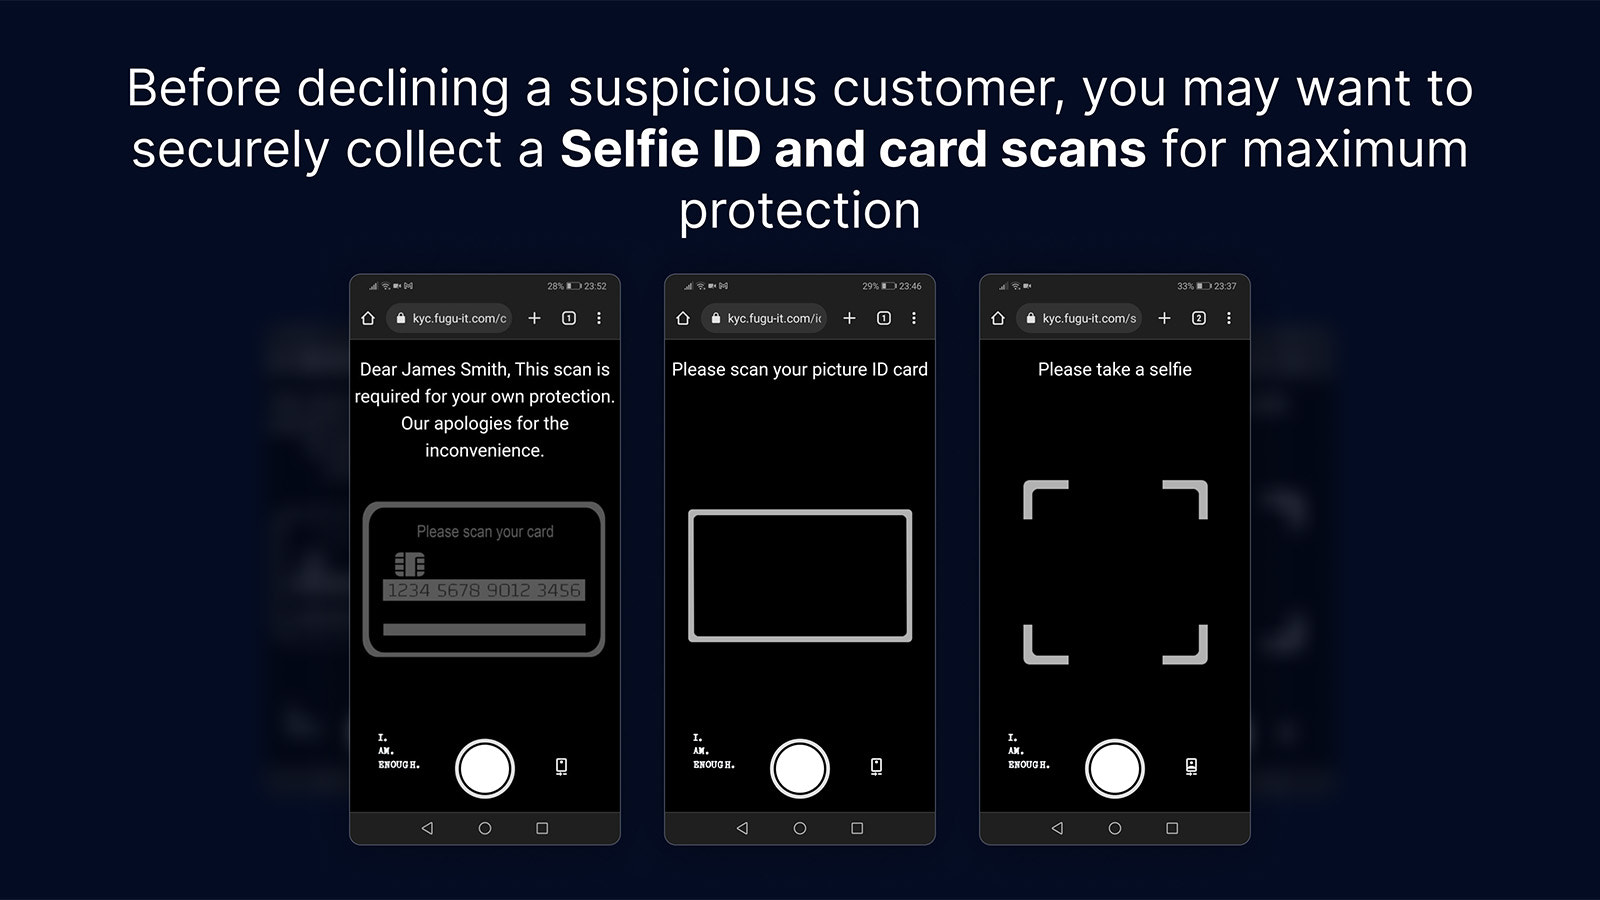 Lorsque nécessaire, collectez en toute sécurité les ID de selfie et les scans de cartes